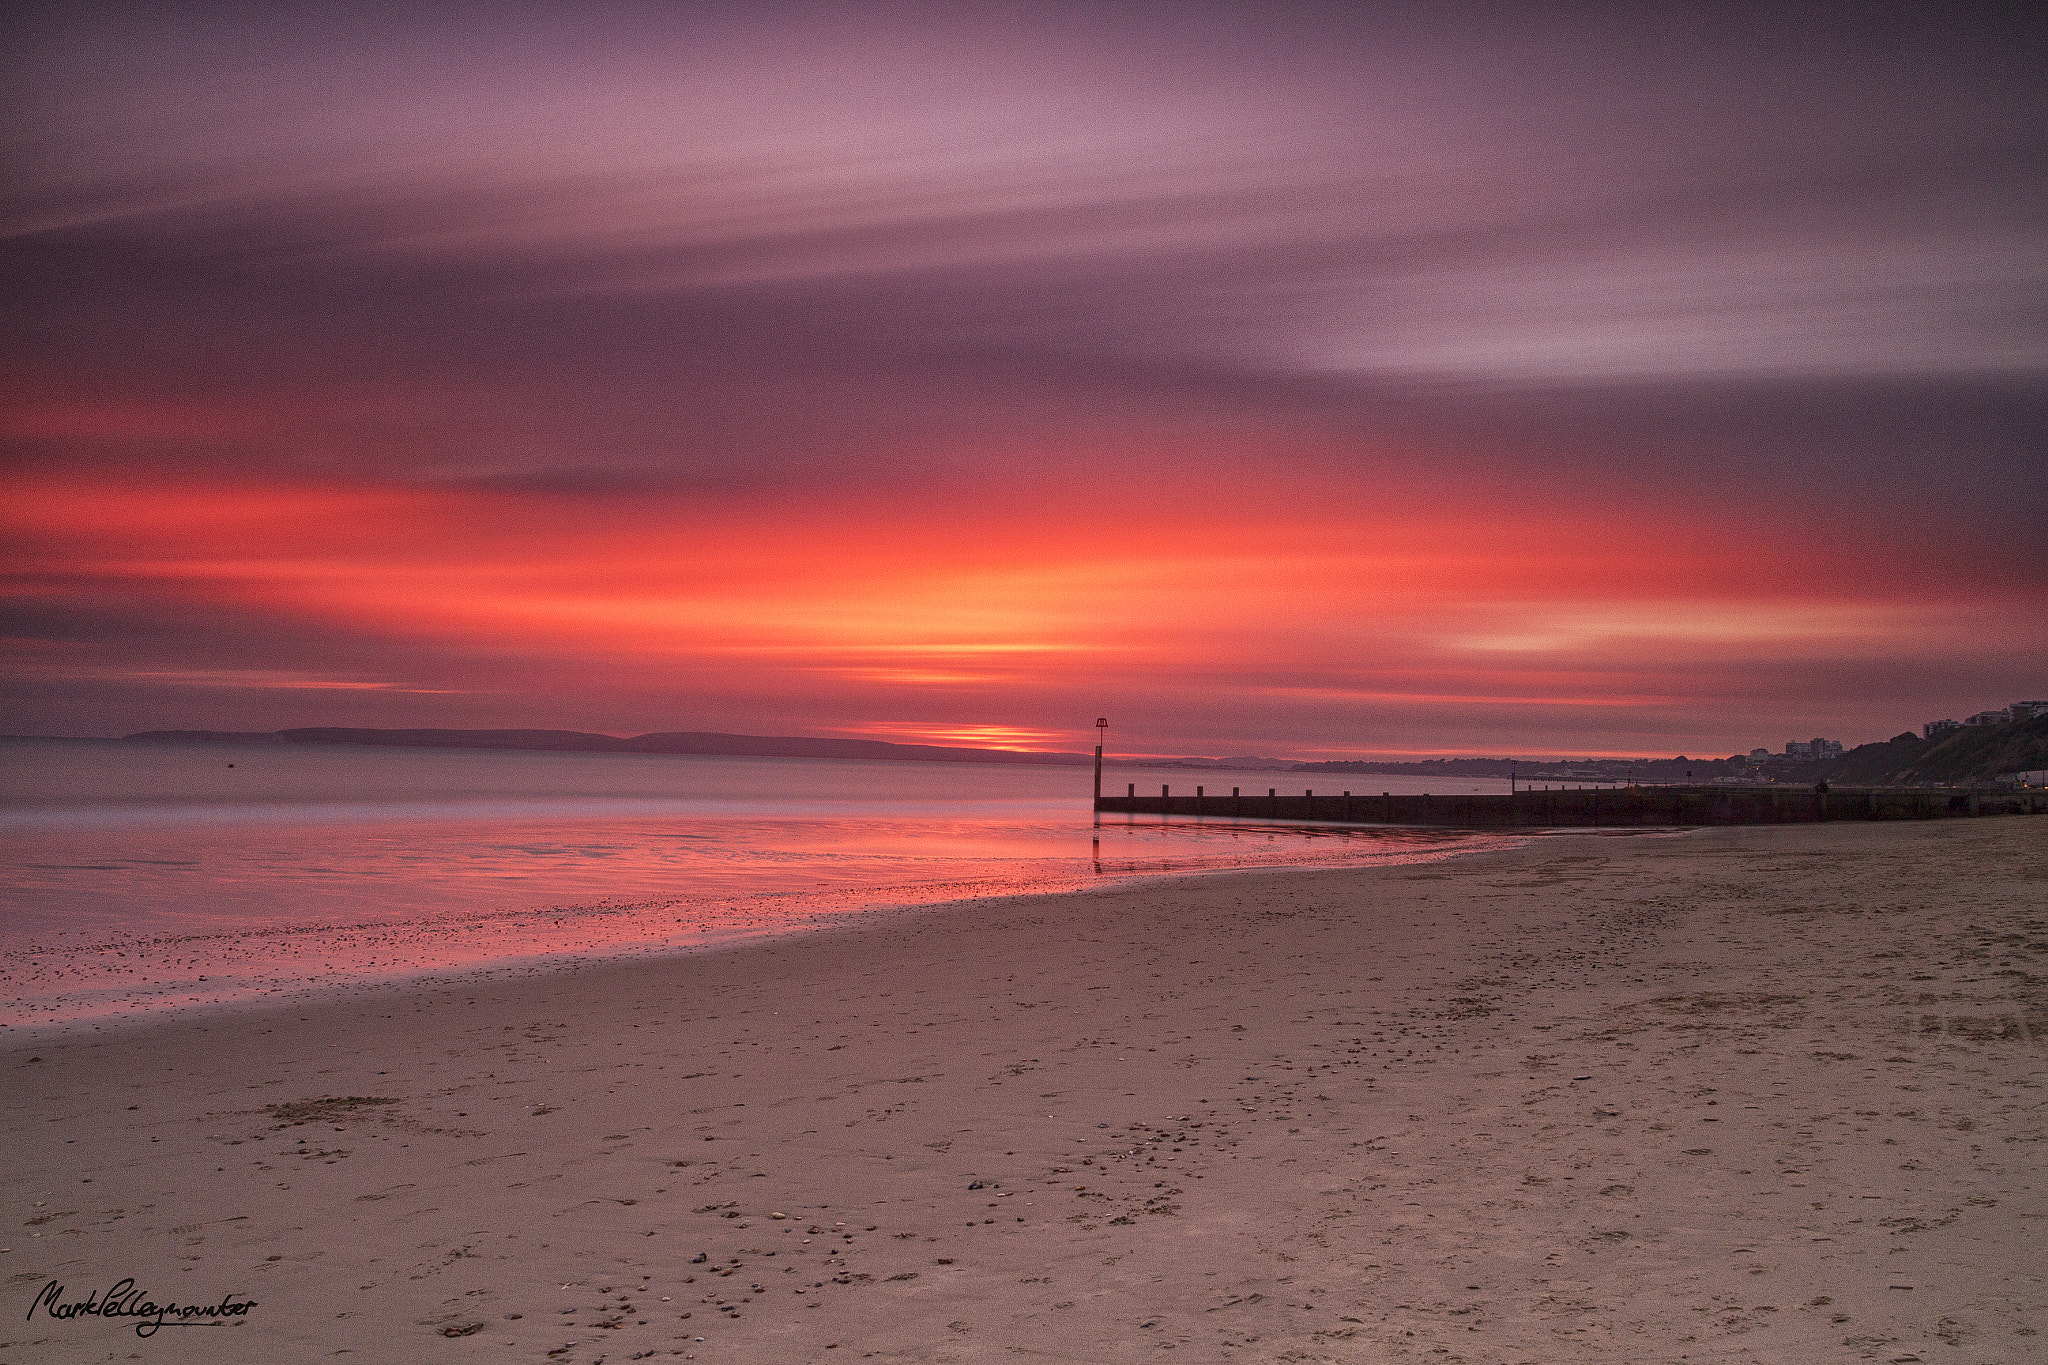 Canon EOS 7D sample photo. Beach sunset photography